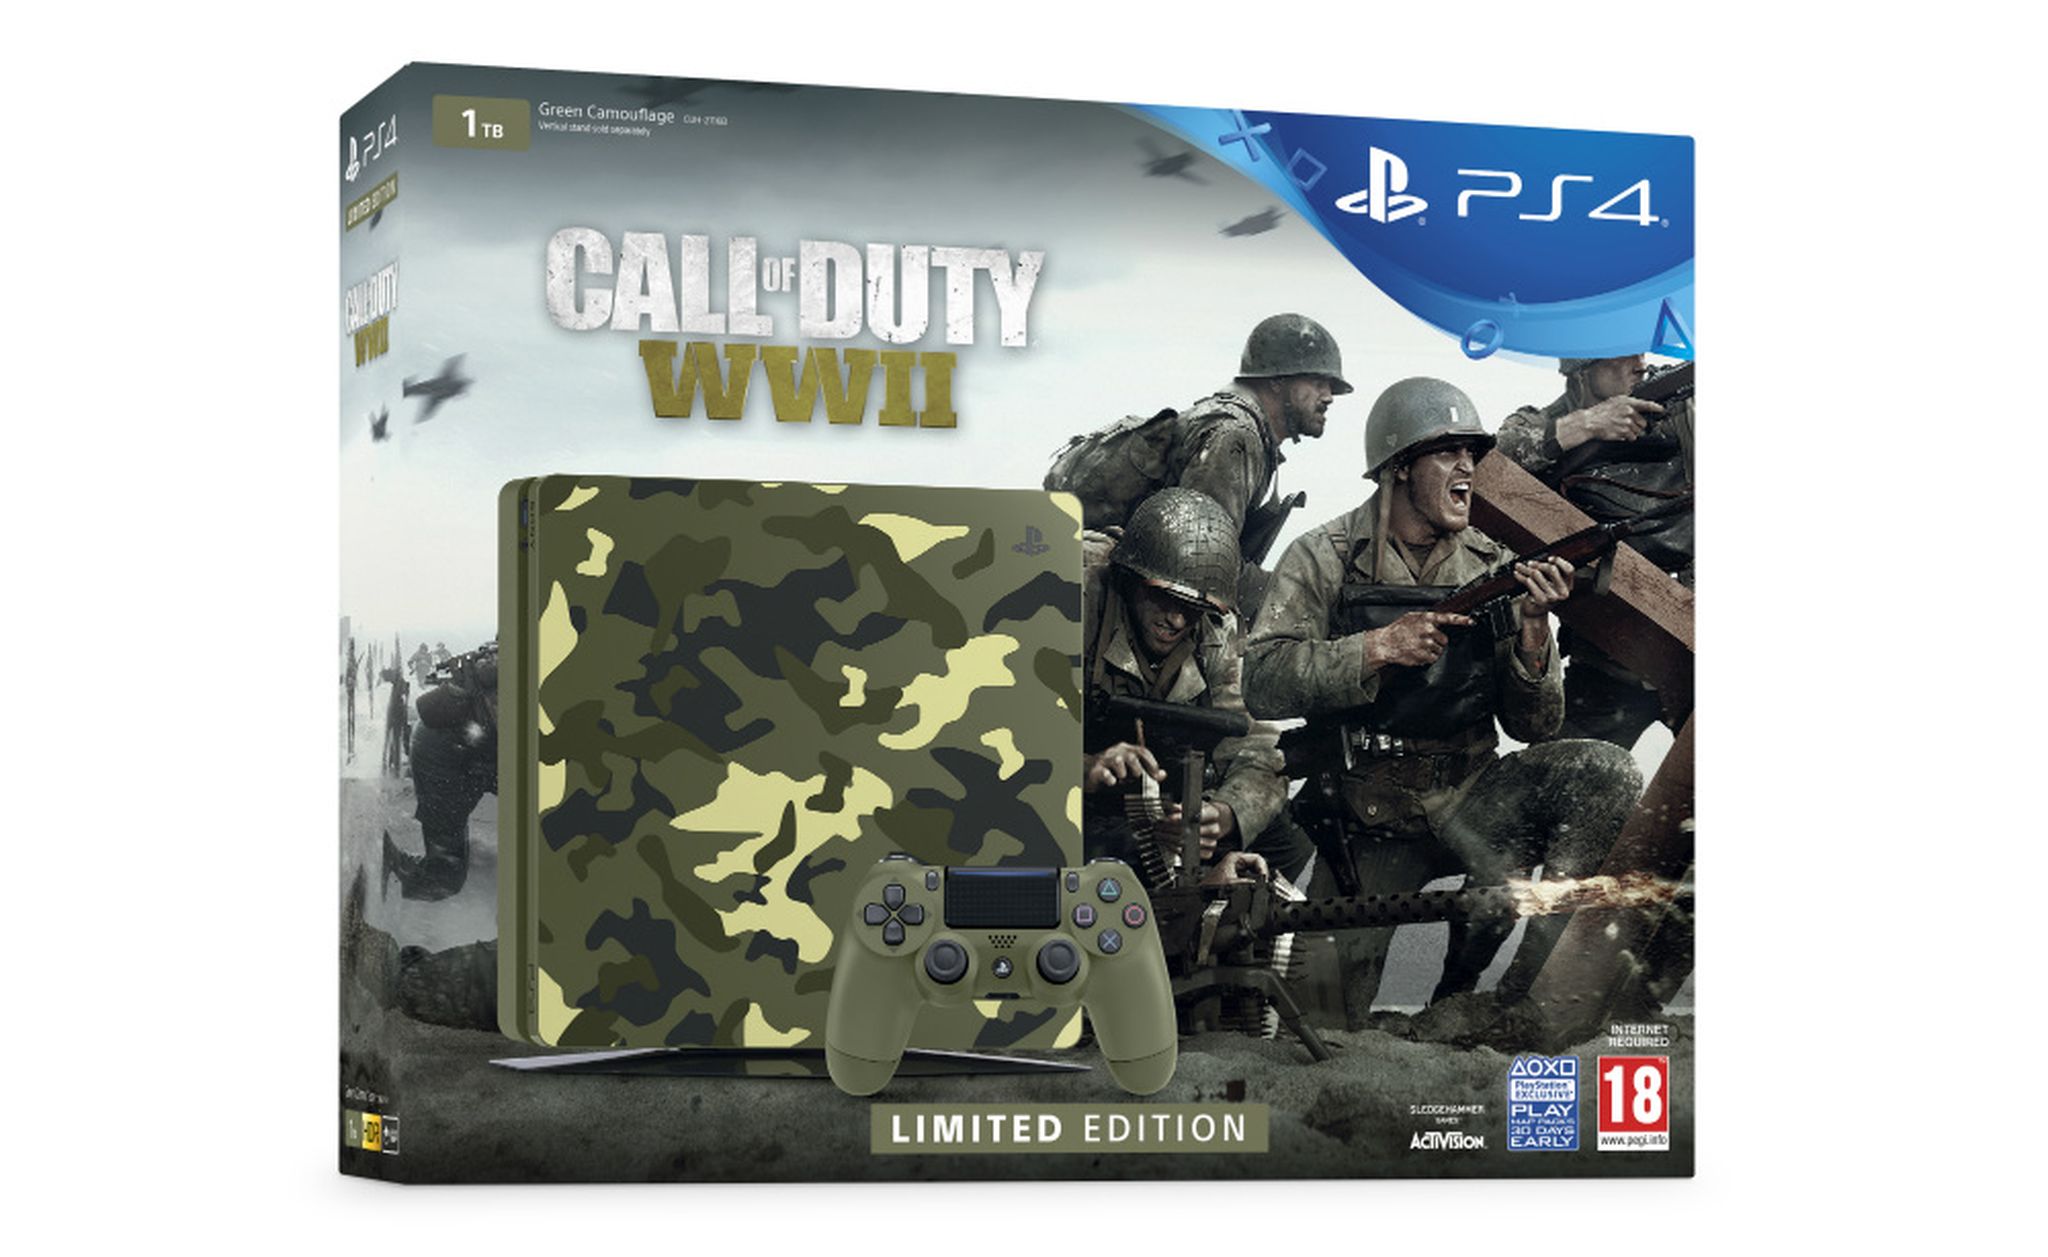 PS4 Edición Limitada de Call of Duty WWII